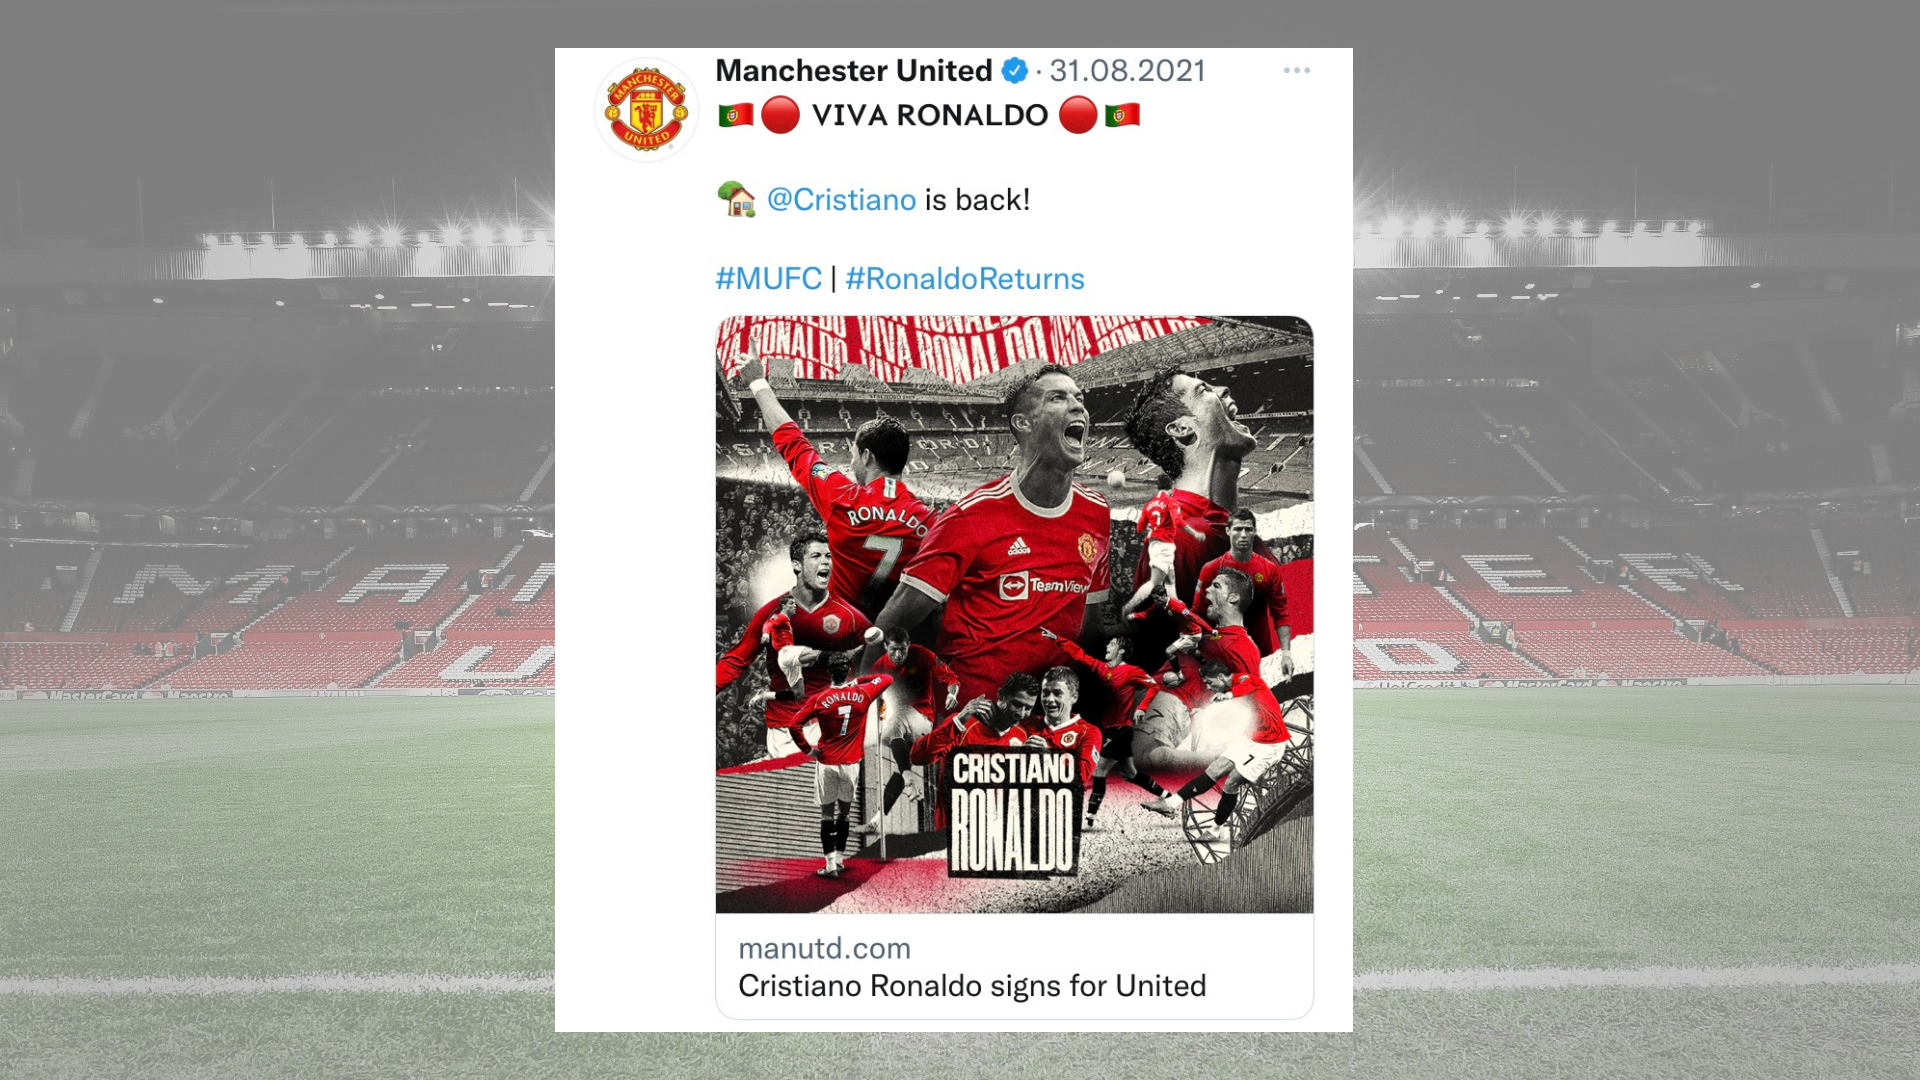 Manhester United'in twitter hesabında yaptığı bir paylaşım görseli.